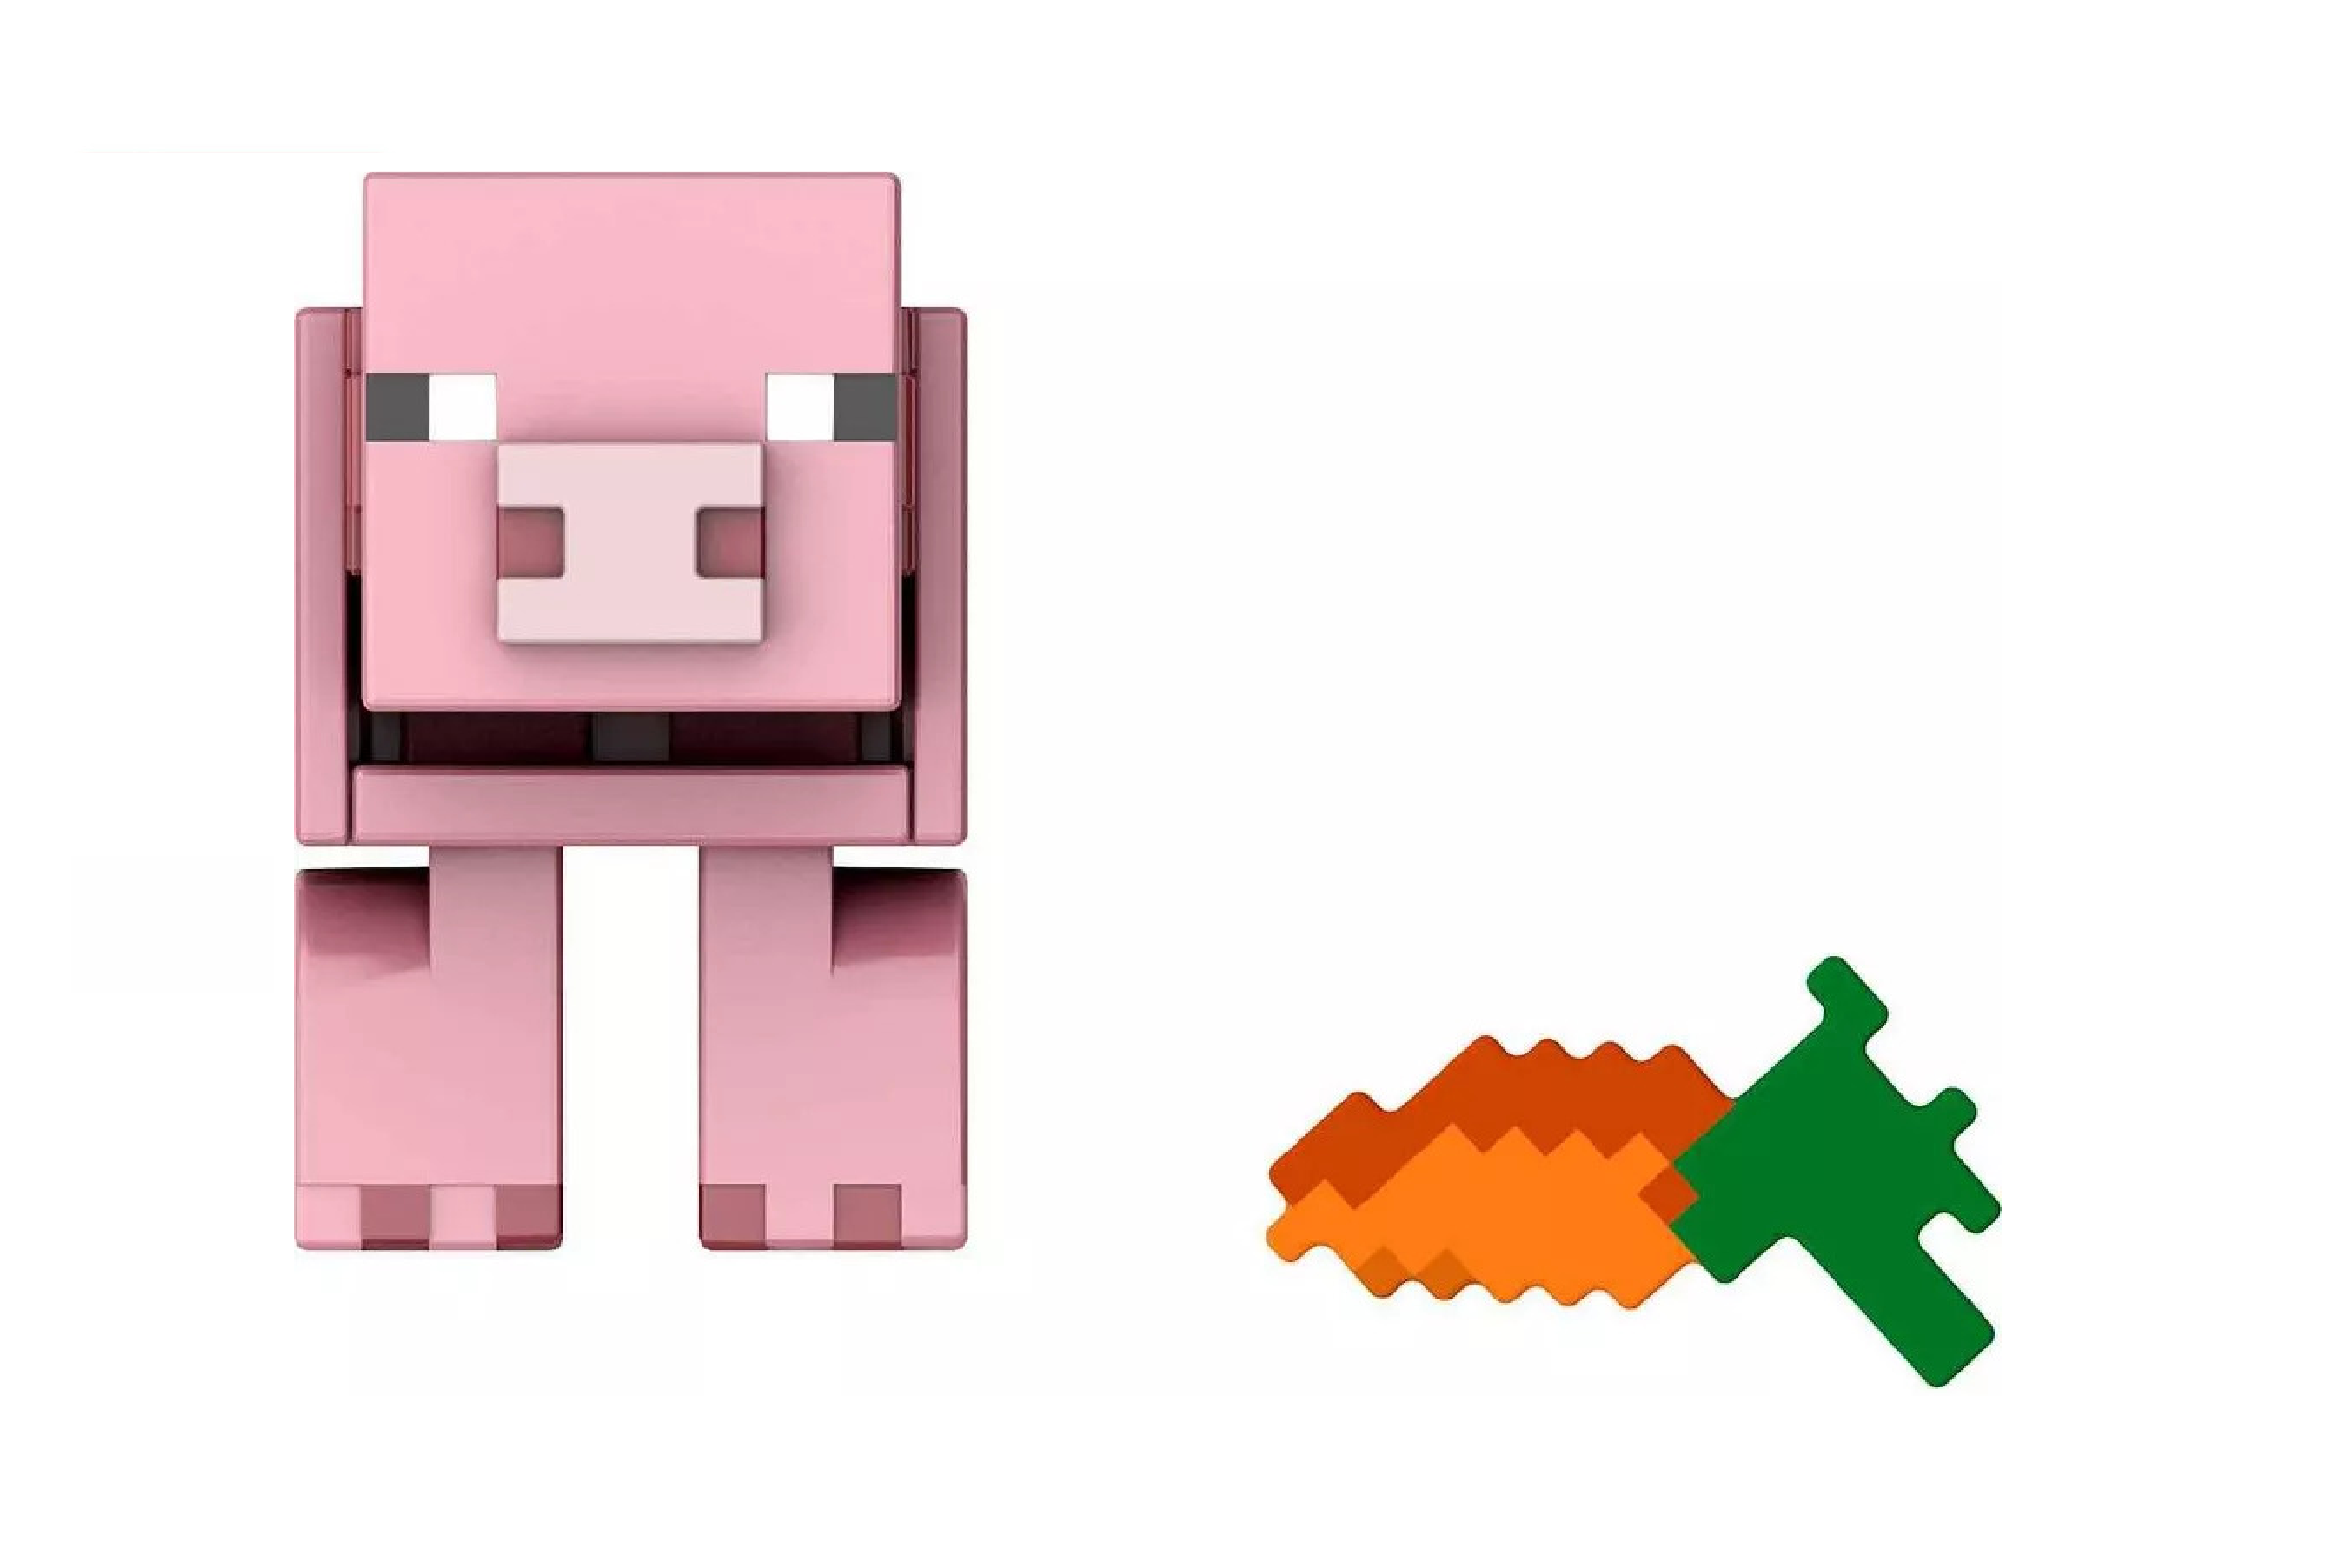 Pig Build-A-Portal Minecraft Mattel - Prime Colecionismo